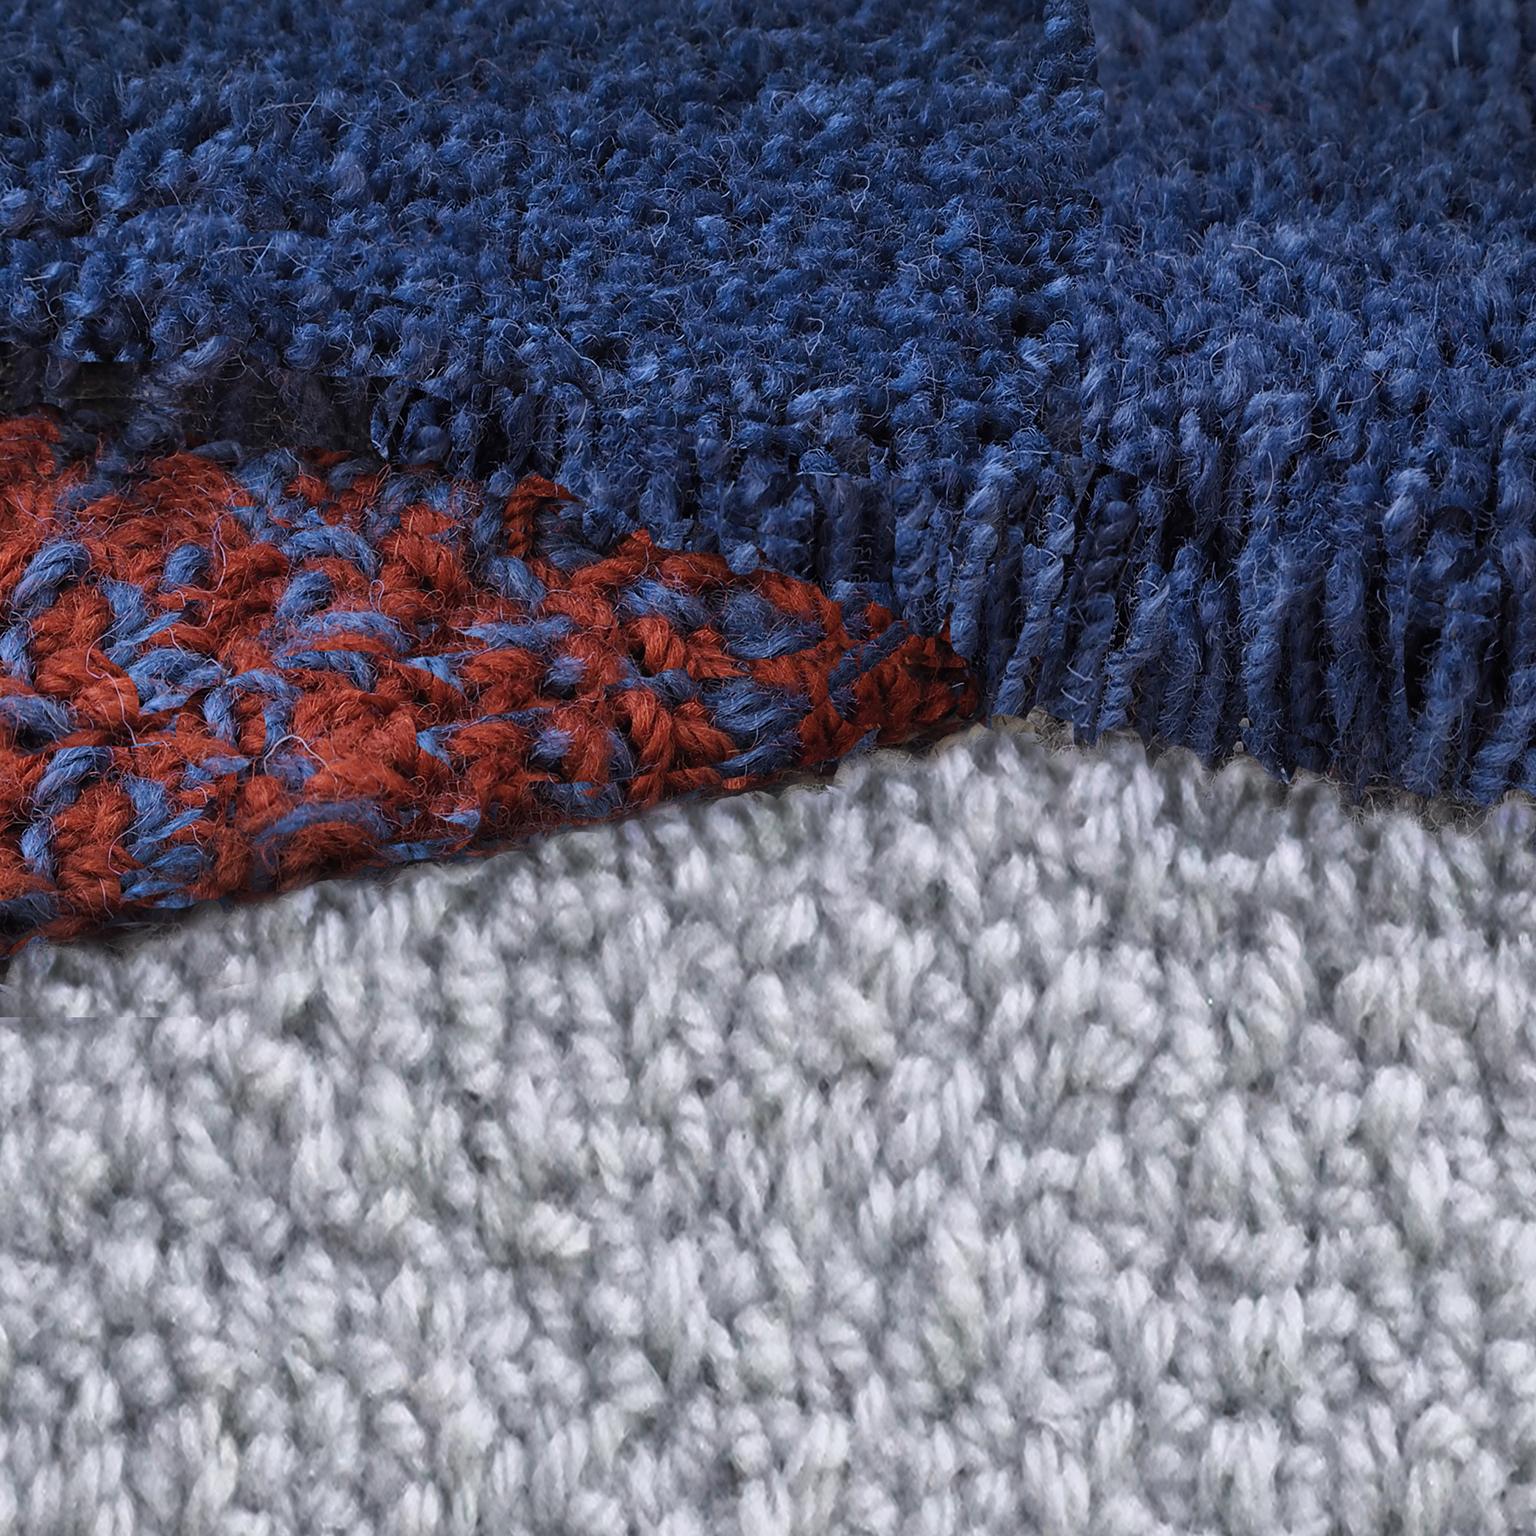 tapis 100% laine de Nouvelle-Zélande
Conçu par Seraina Lareida 
Fabriqué en Italie

Oci Right est l'une des formes de tapis de la ligne facilement adaptable à tout type d'espace.
En marchant dessus, vous pouvez sentir les différentes longueurs